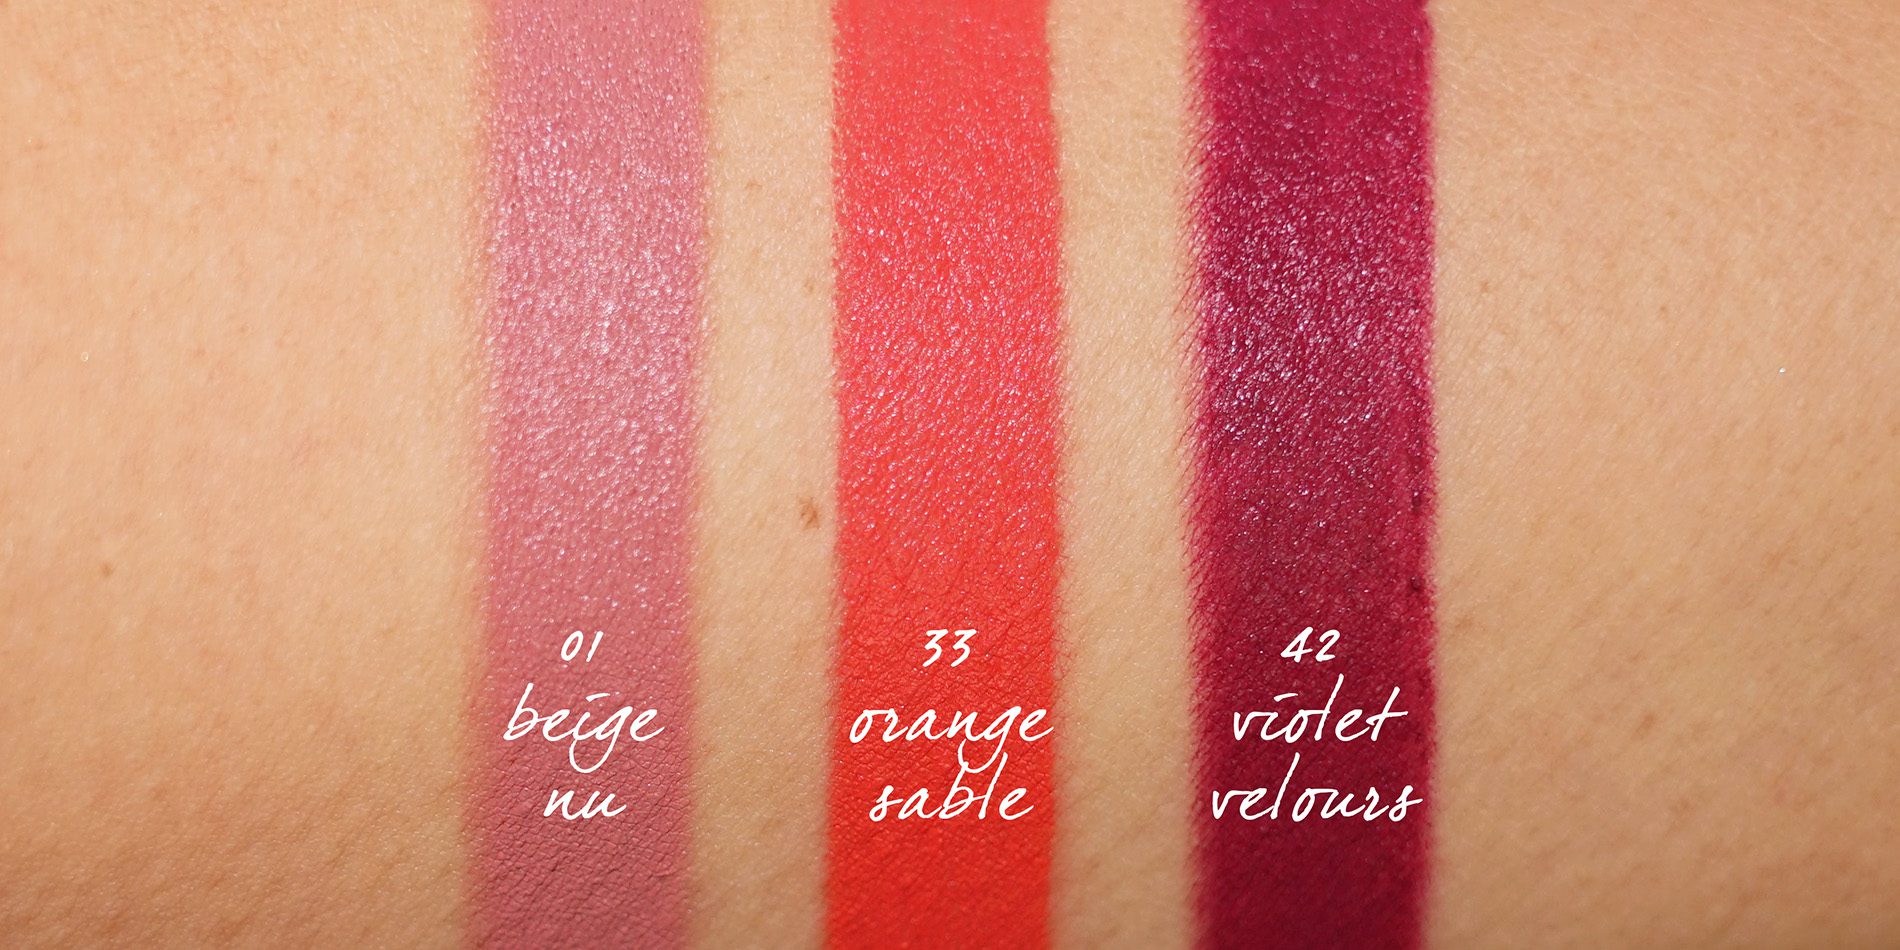 givenchy lipstick le rouge deep velvet